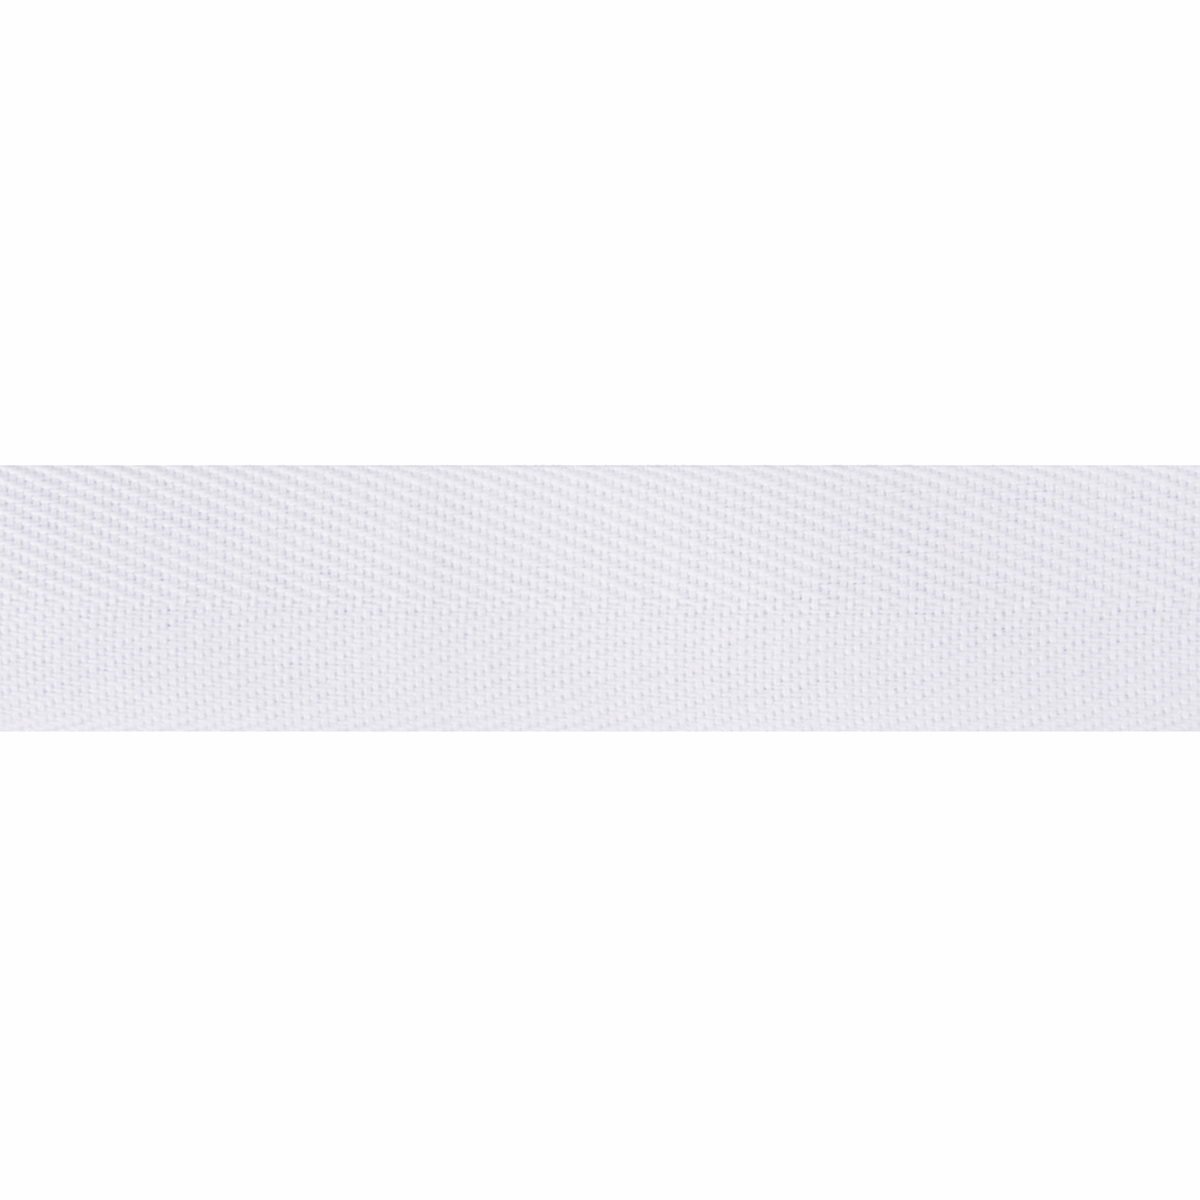 Herringbone Cotton Tape White 25mm Wide Price Per Metre